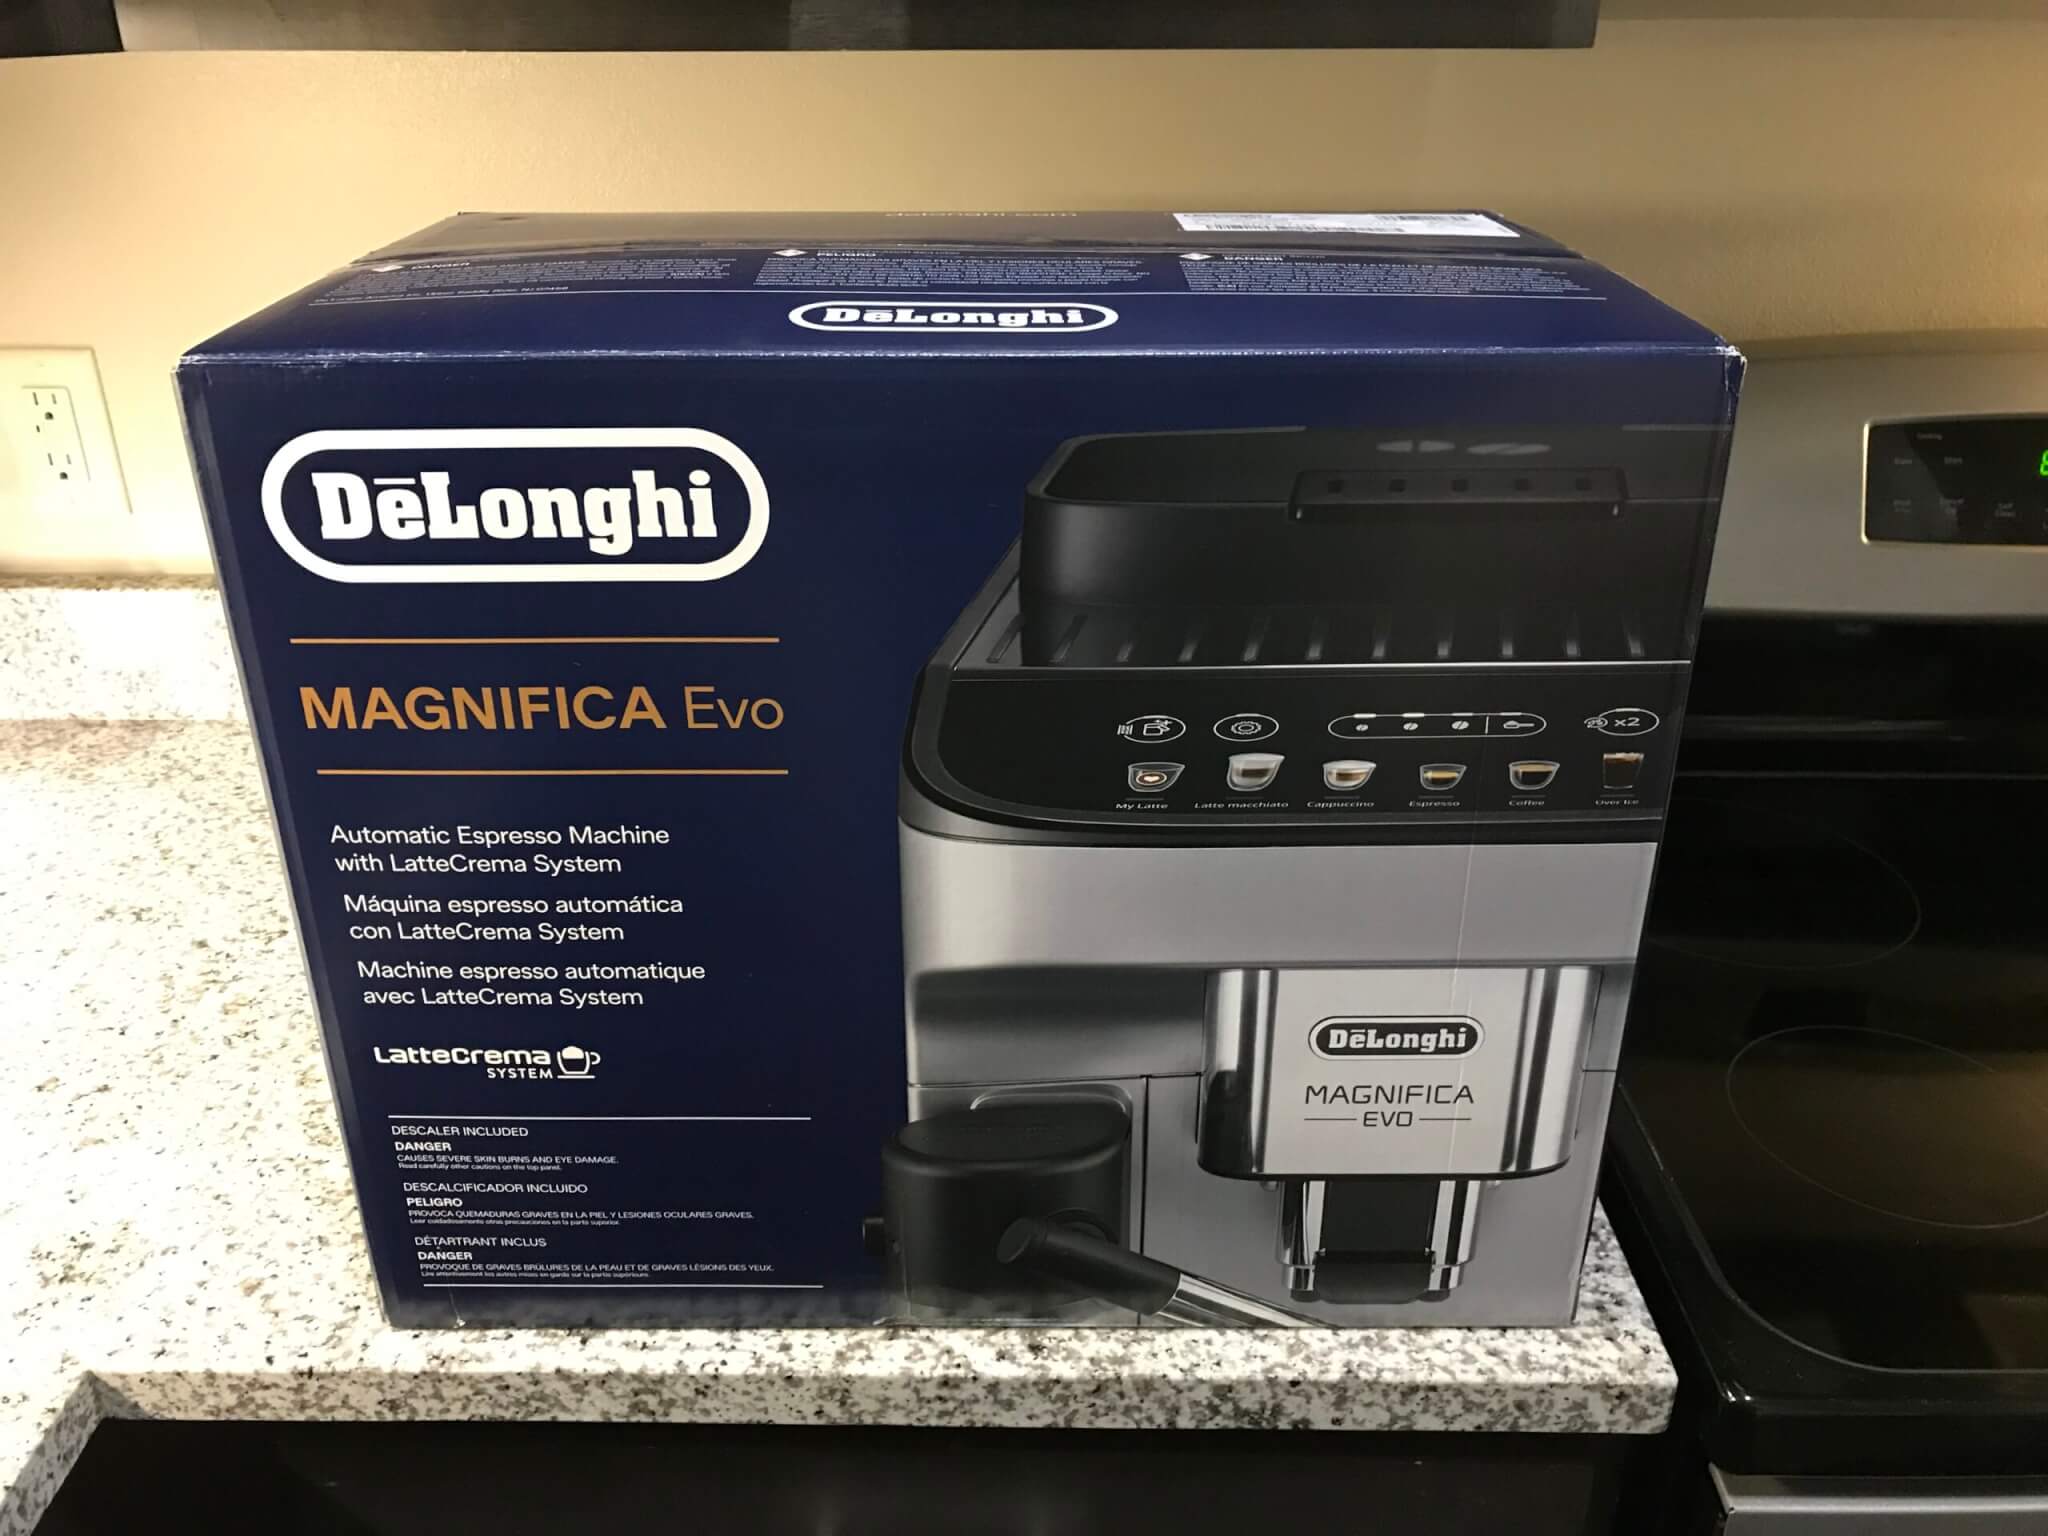 De’Longhi Magnifica Evo Espresso Machine in box